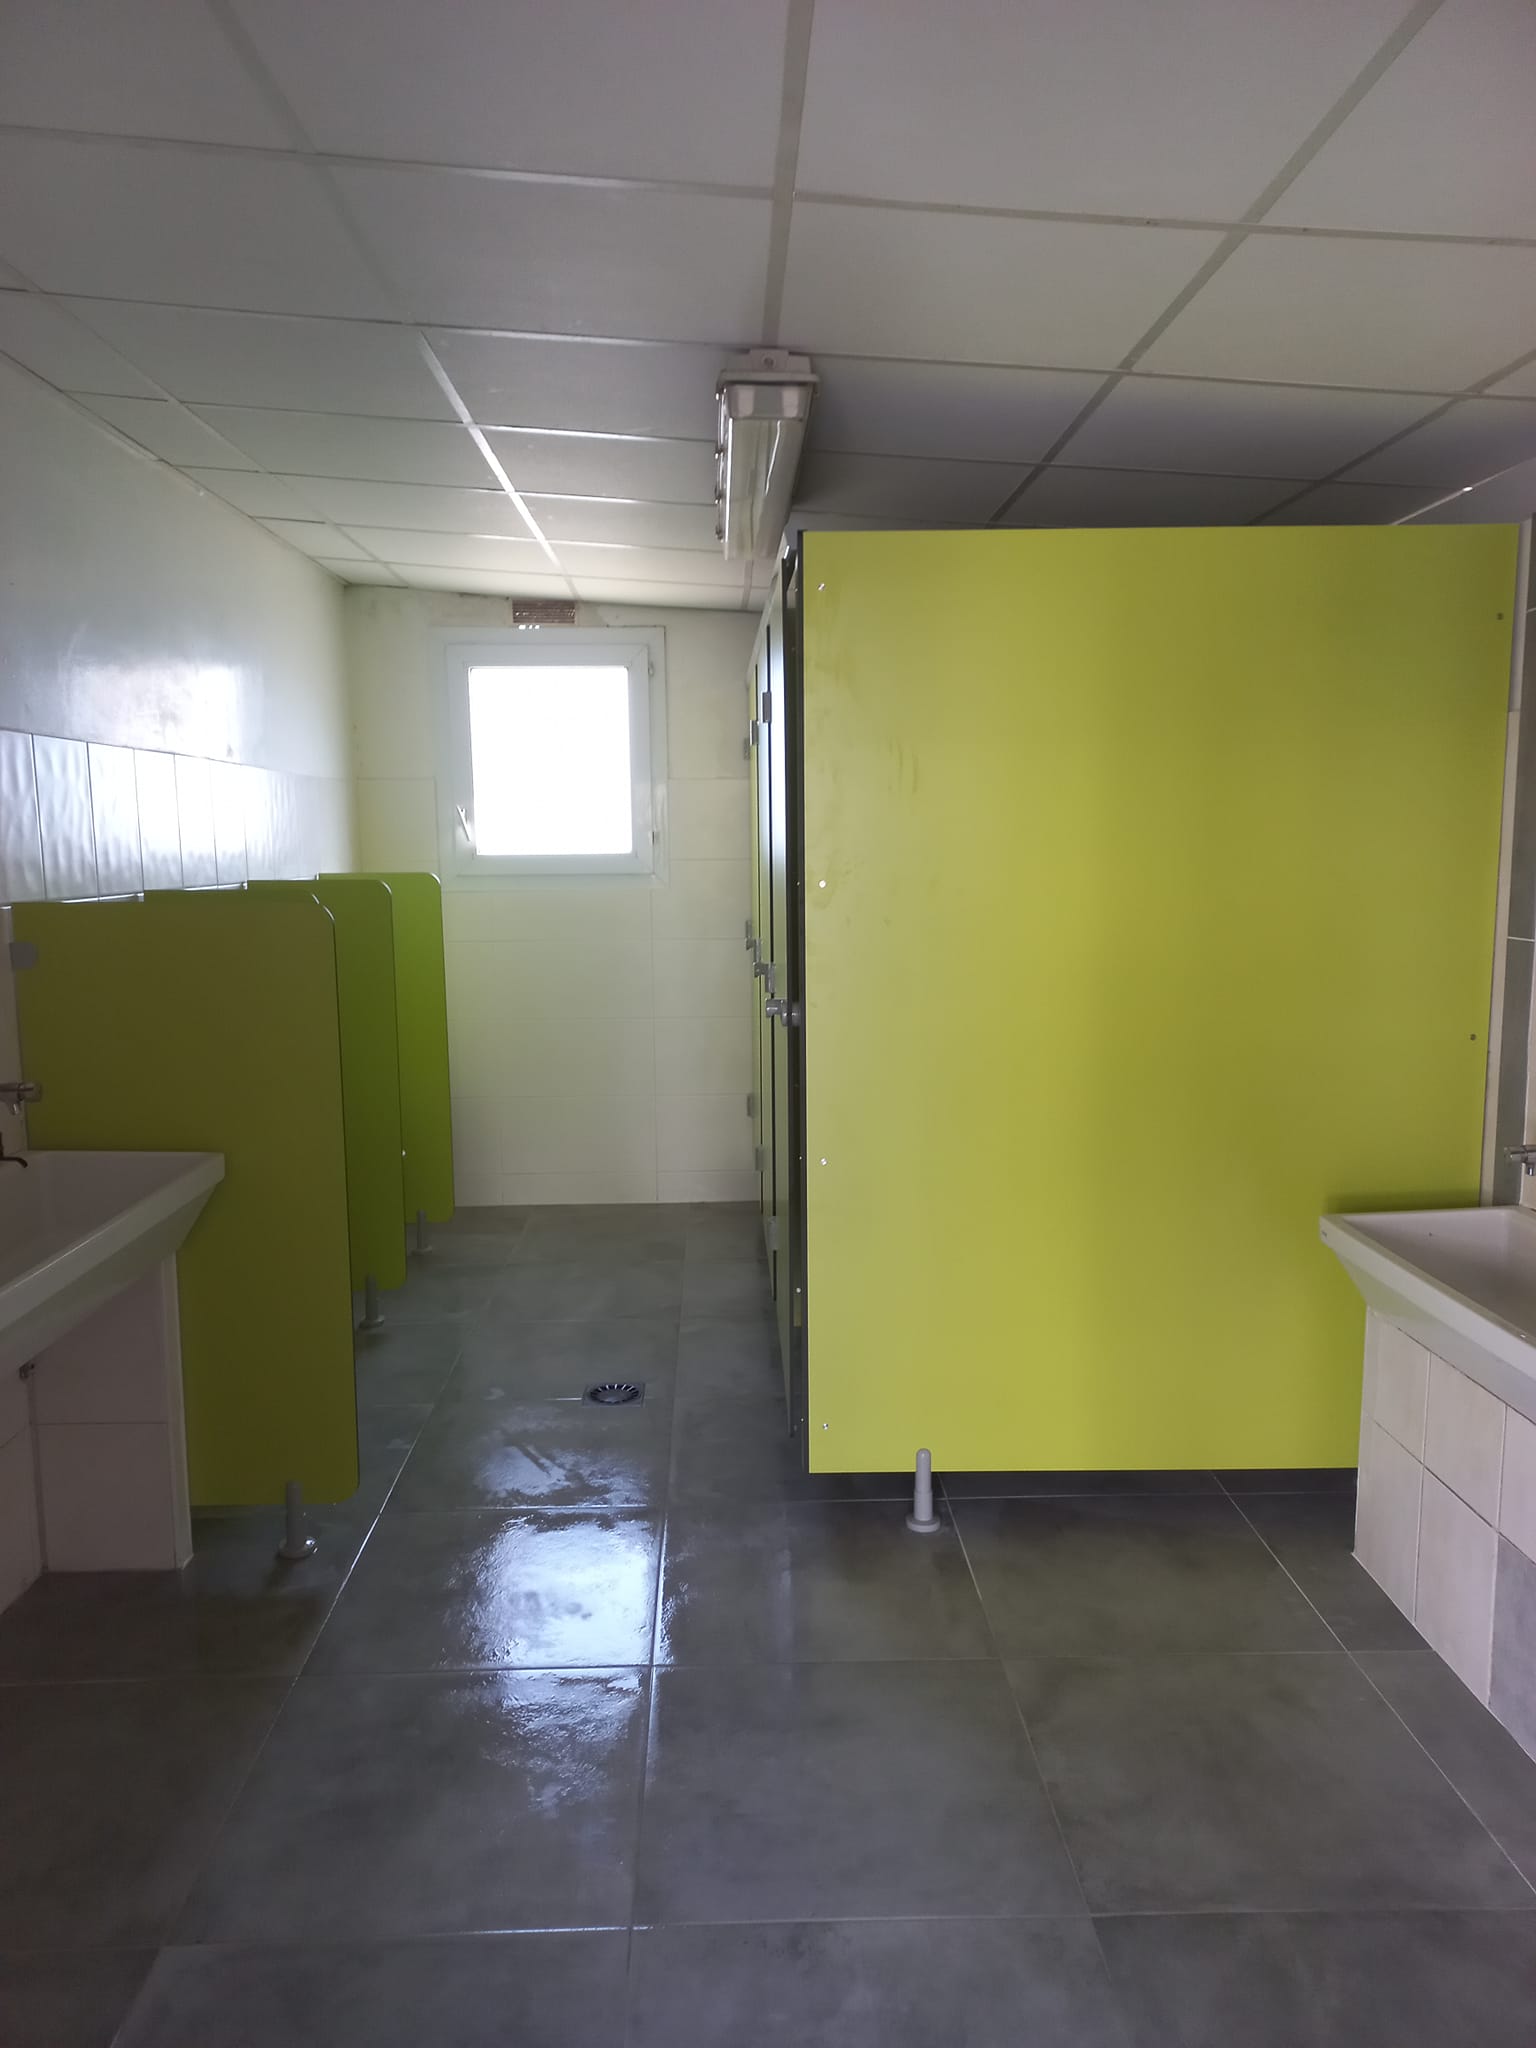 Rénovation des sanitaires dans une école avec pose de cloiso…